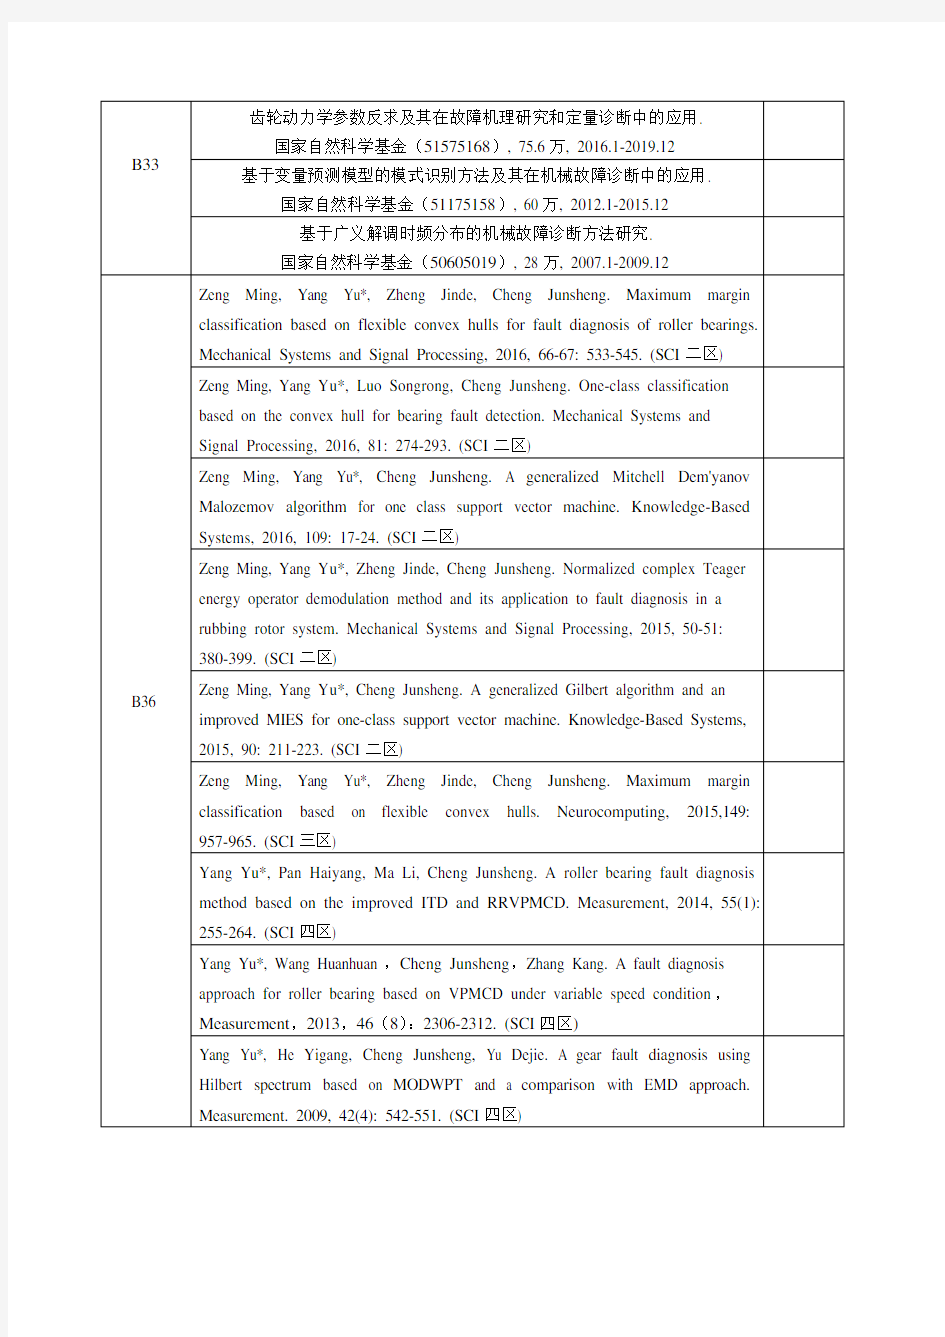 教学科研系列职级申报表杨宇-湖南大学机械与运载工程学院